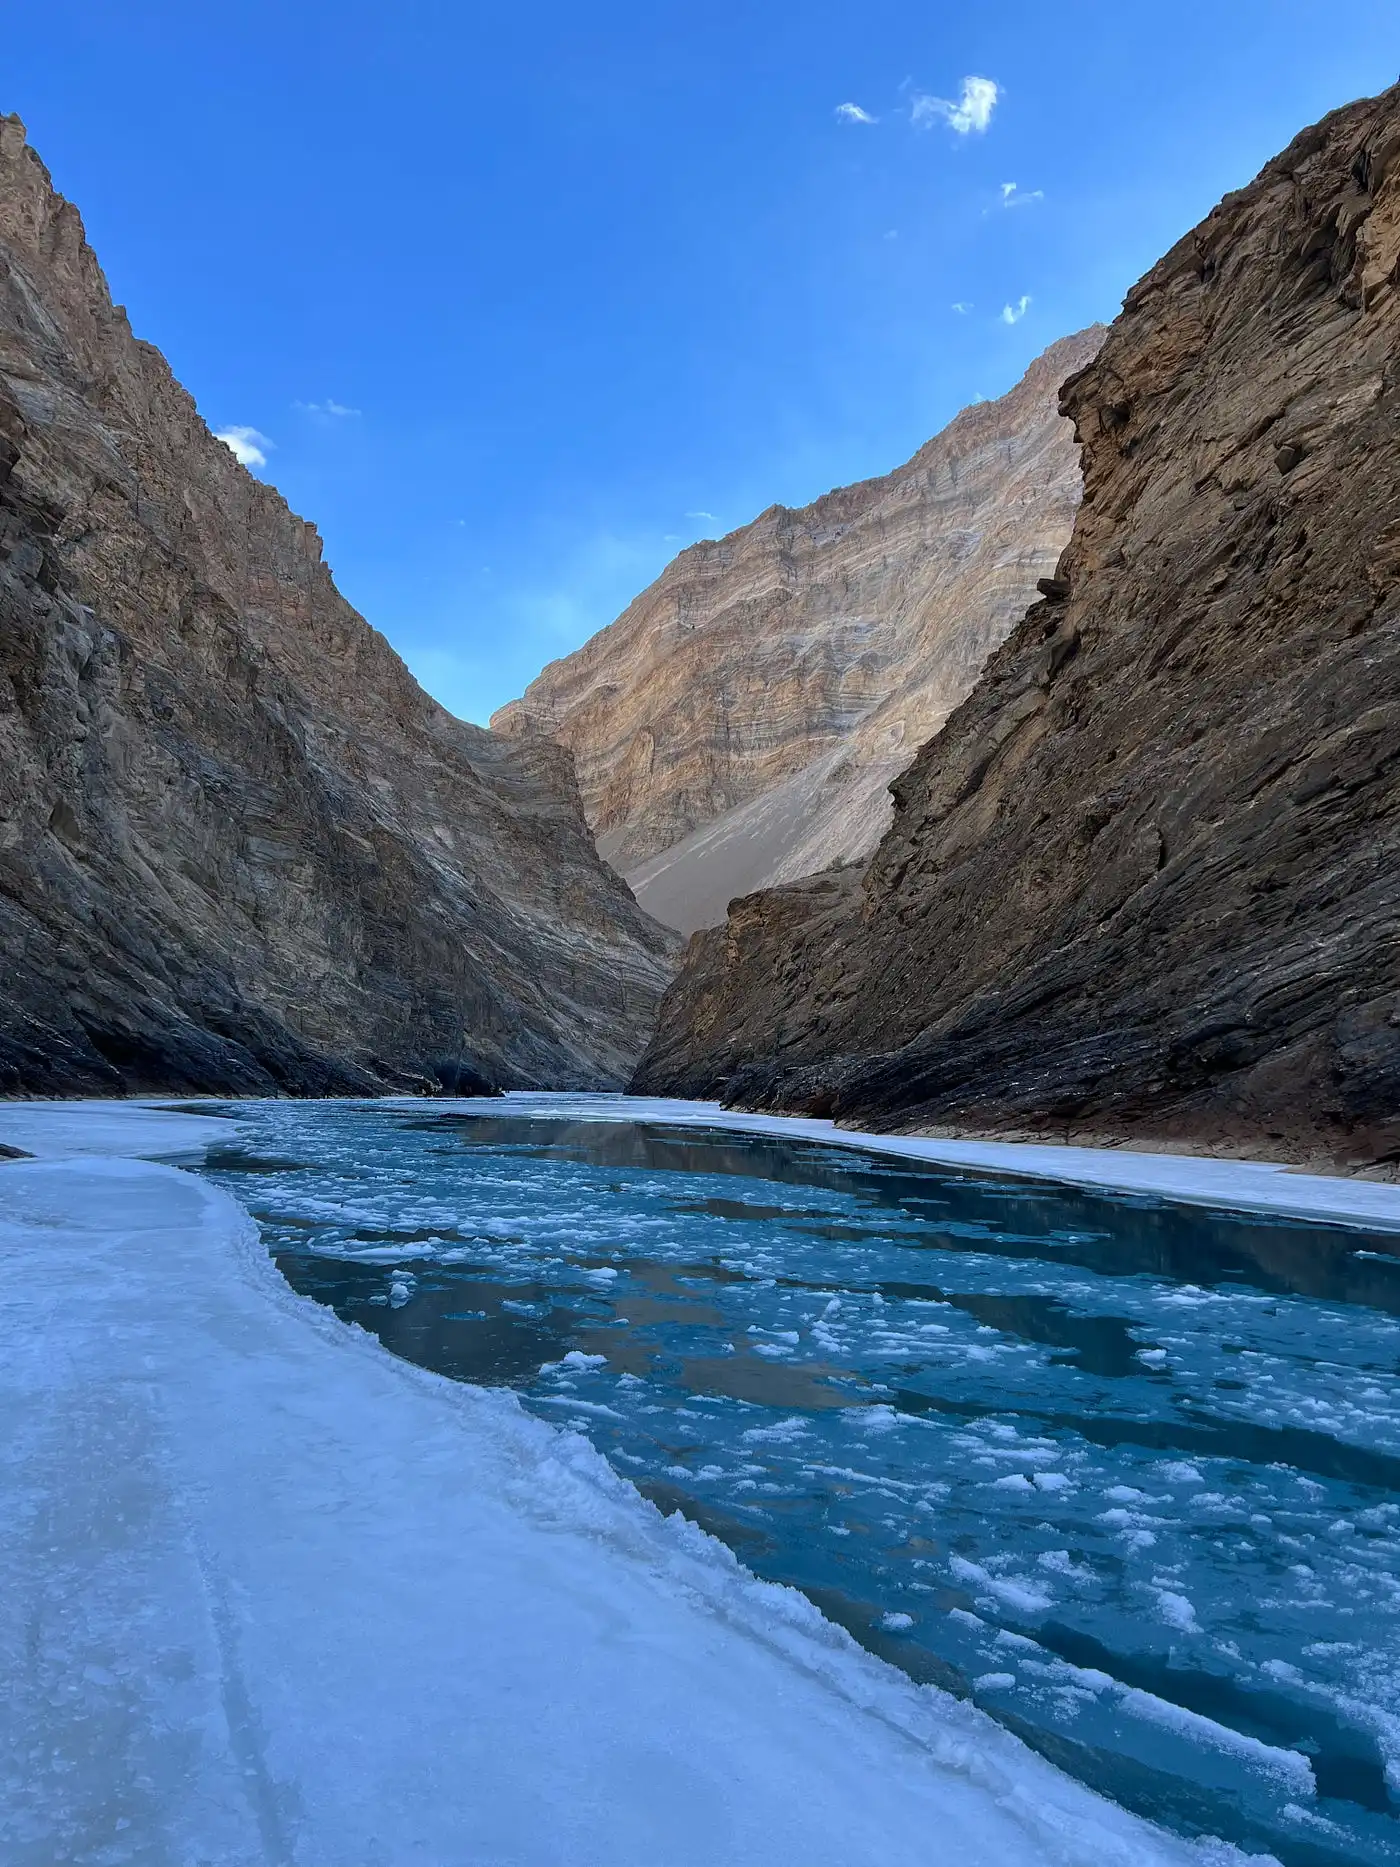 Frozen-Zanskar-River in Ladakh, Himalayas in India